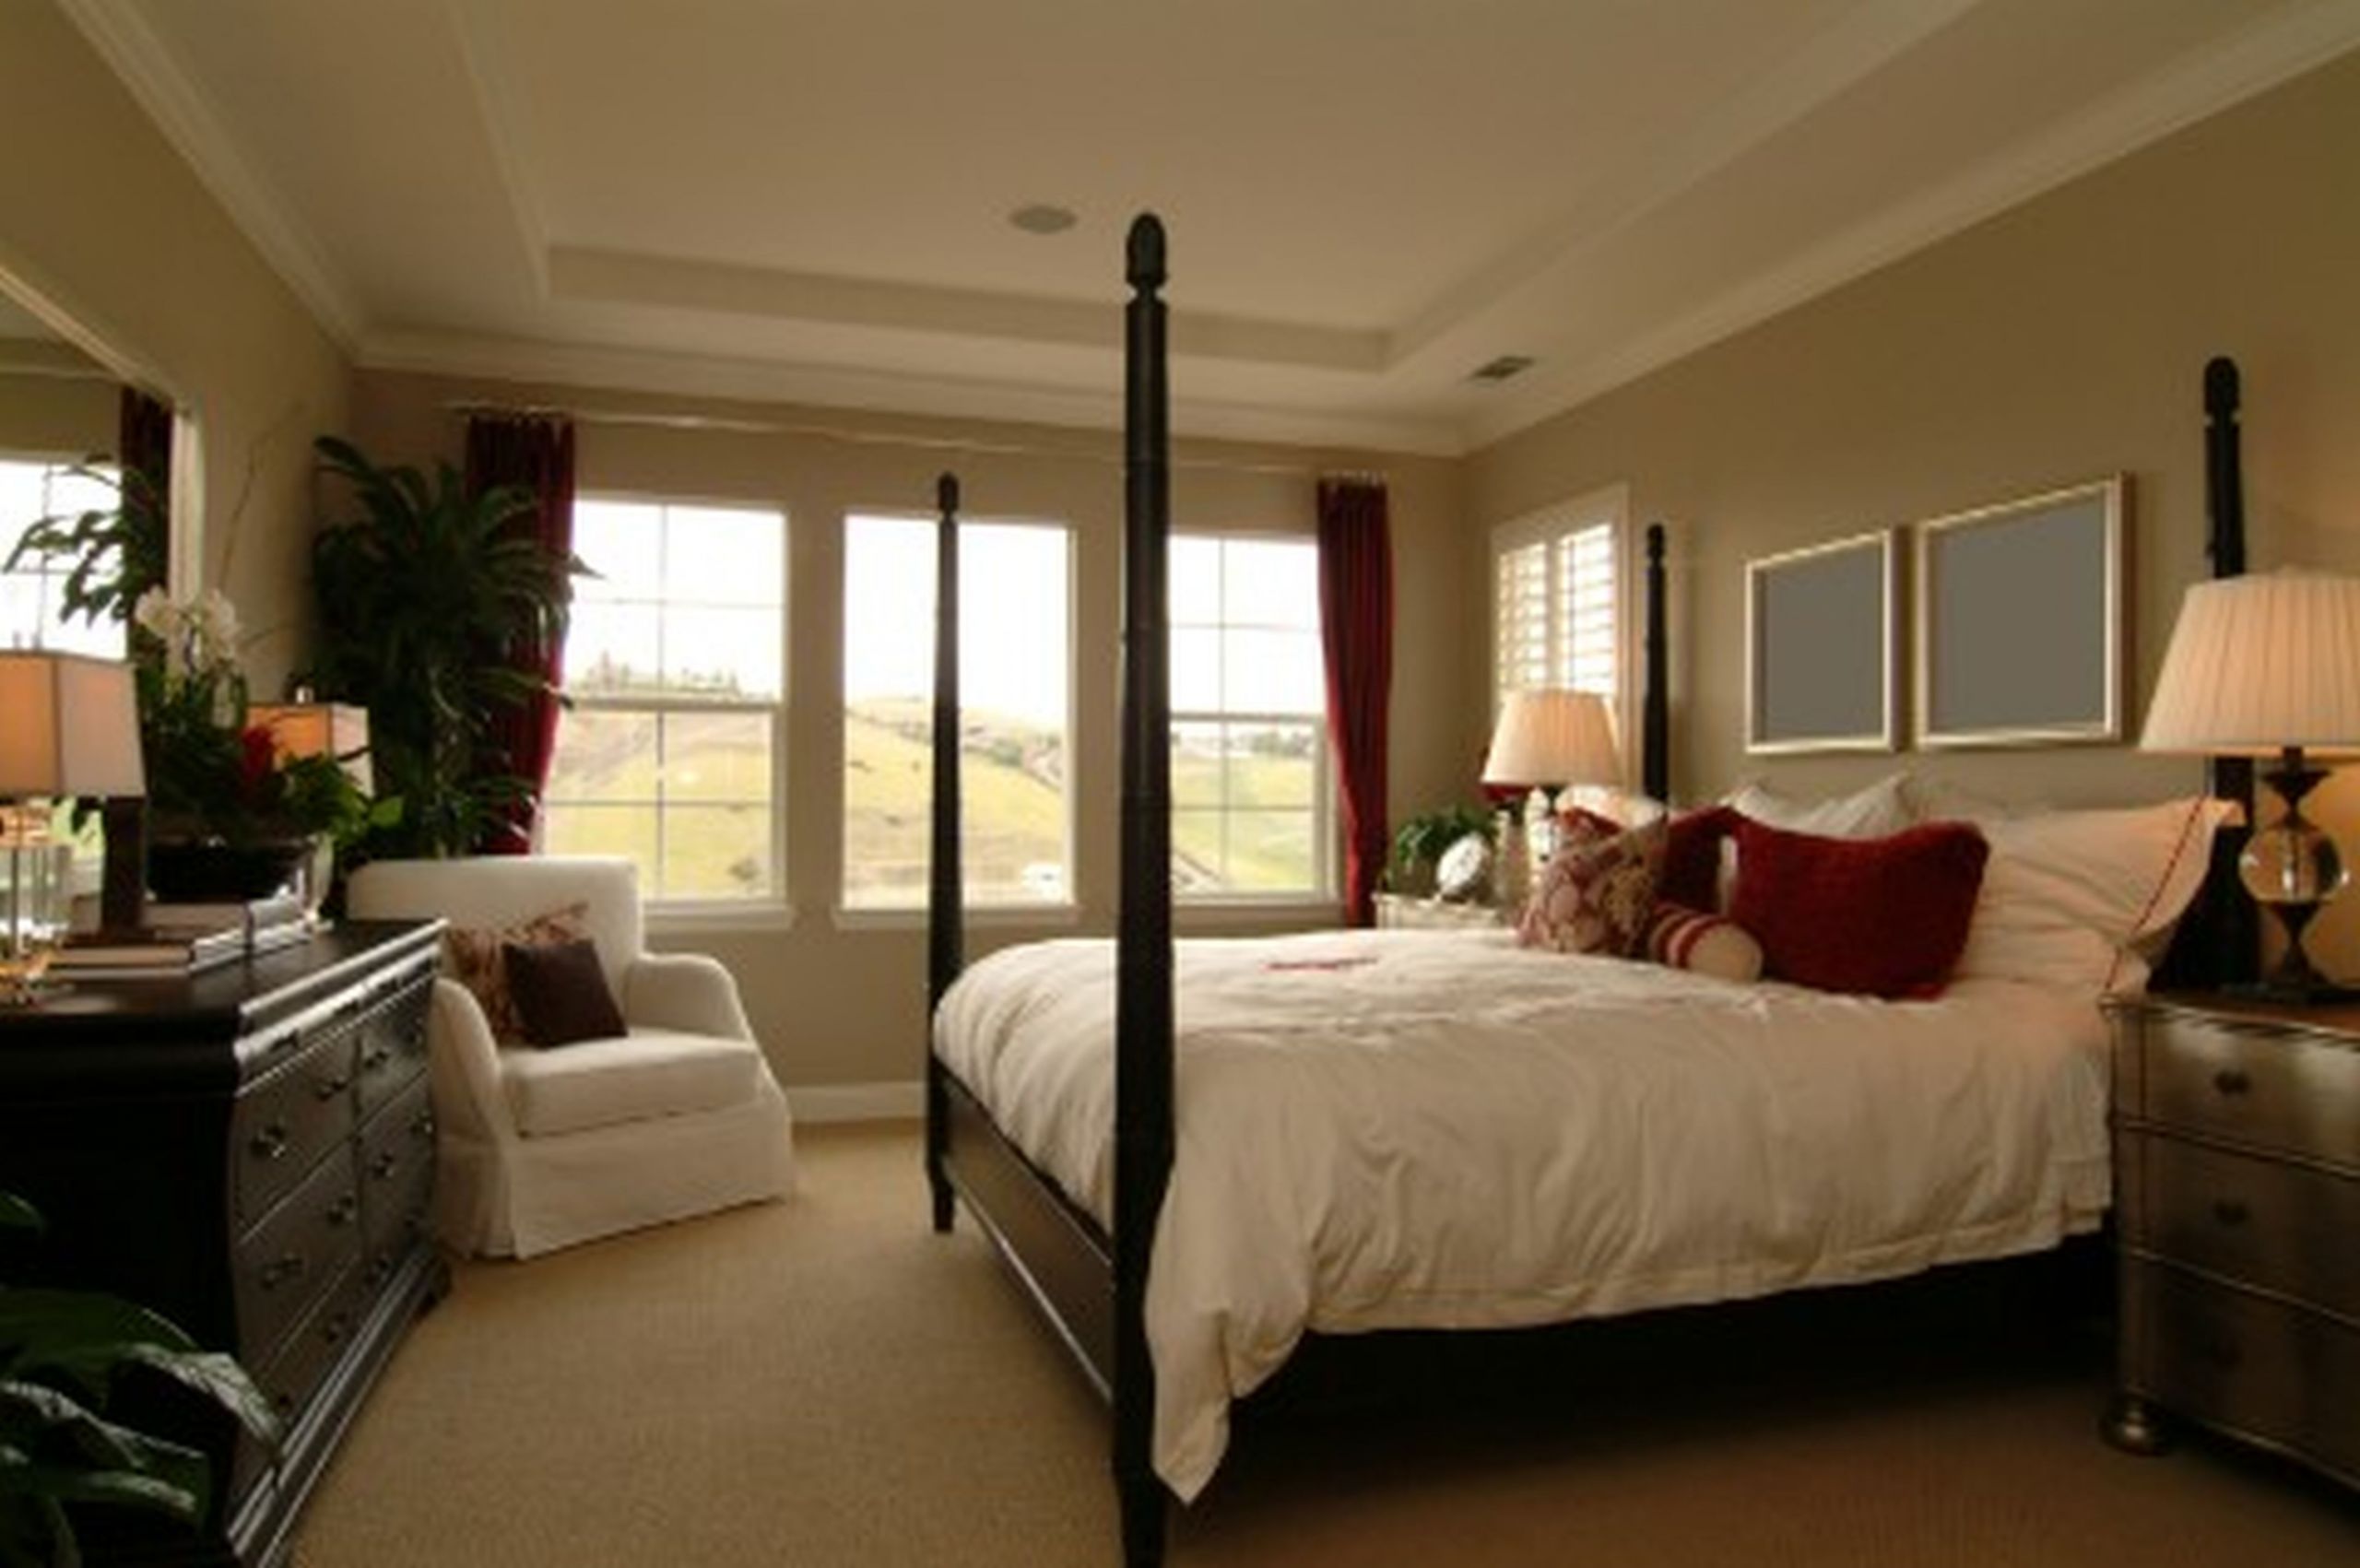 Master Bedroom Decor Ideas
 10 Best Master Bedroom Decor Ideas Best Interior Decor